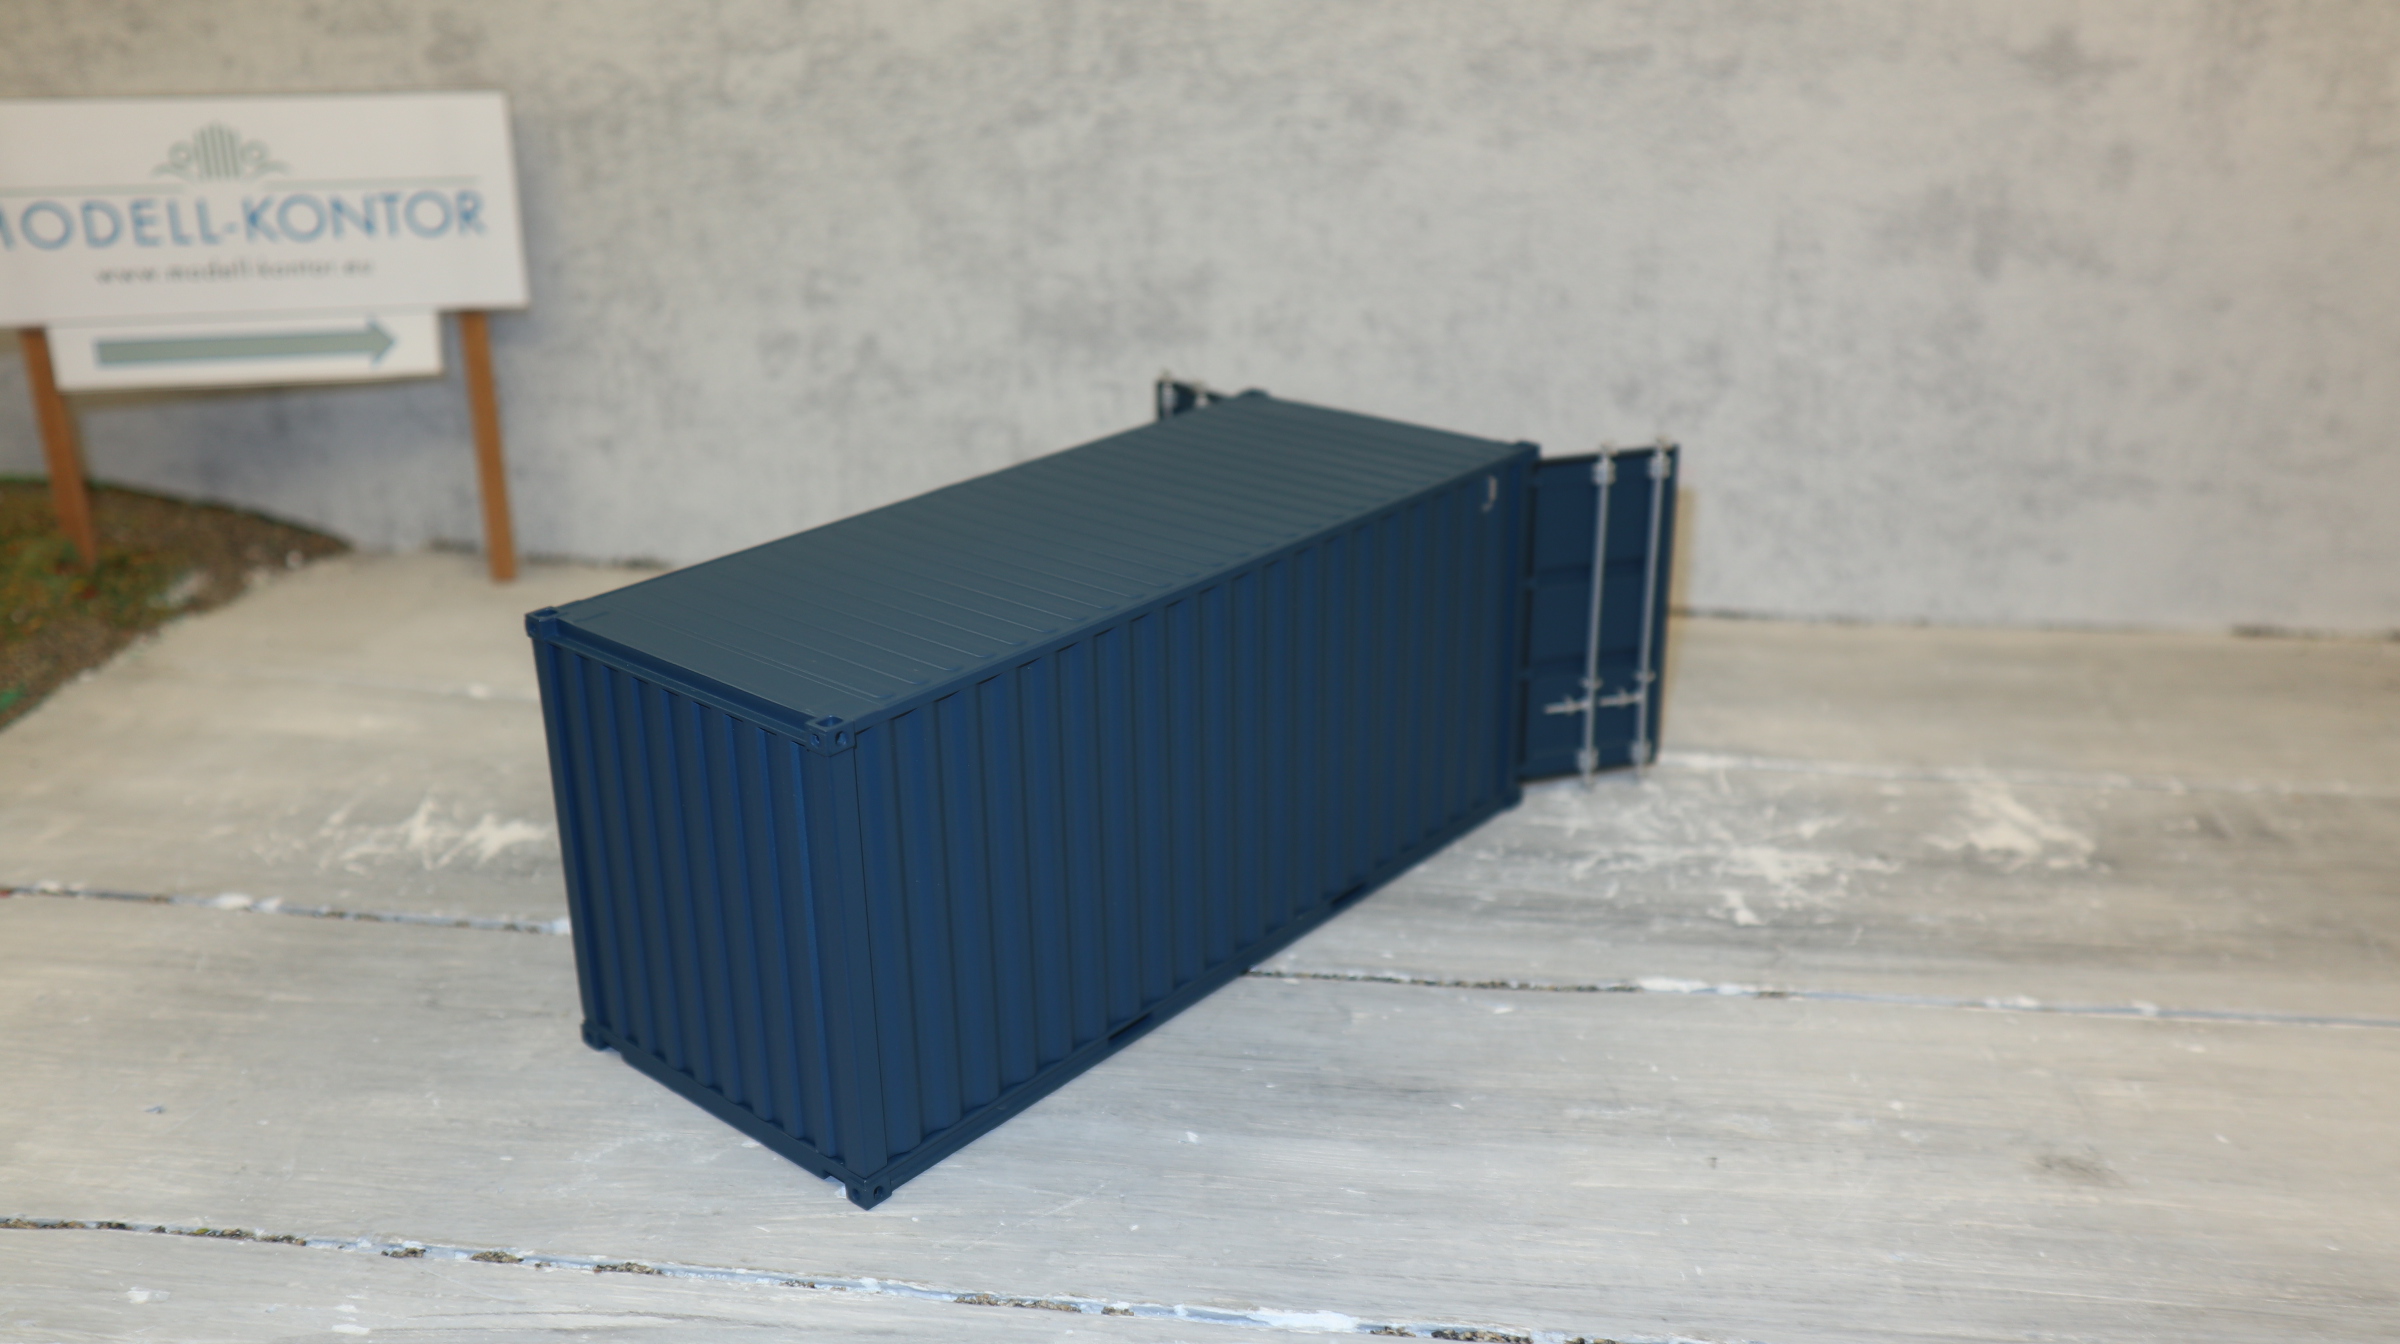 Hollandoto NL 1257 in 1:32, 20"-Container in blau, Neu in OVP